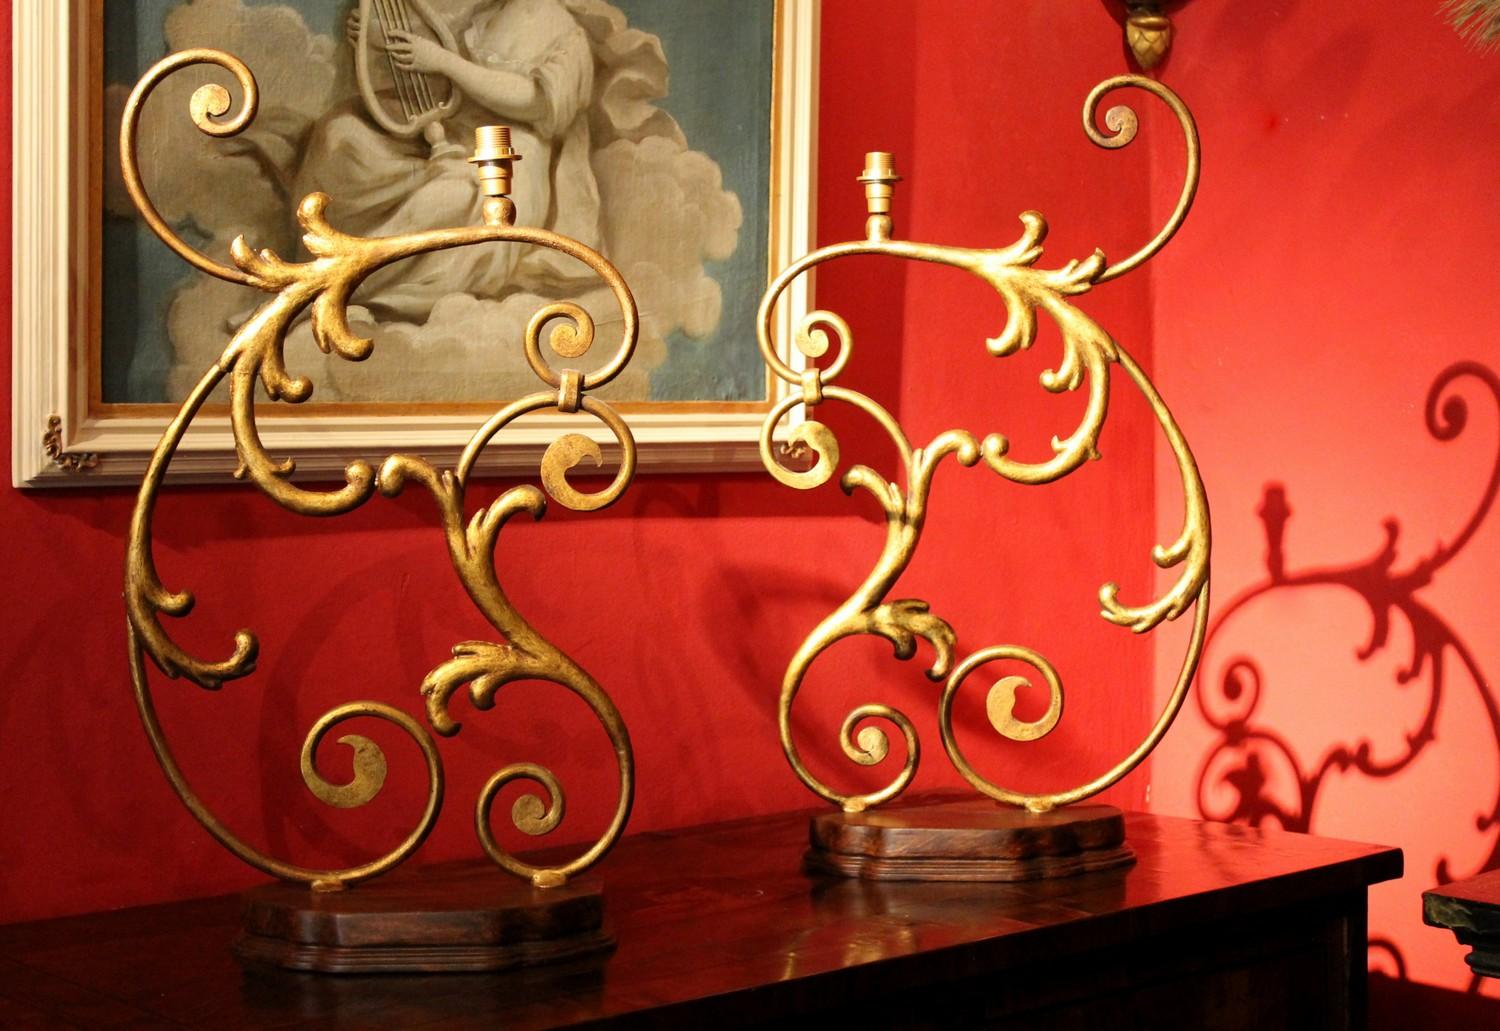 Cette merveilleuse paire de lampes de table de grande taille, de style Renaissance italienne du XIXe siècle, exprime la maîtrise de l'artisanat florentin dans l'art ancien du travail du fer forgé à la main. Ces phénoménaux fragments de fer forgé et